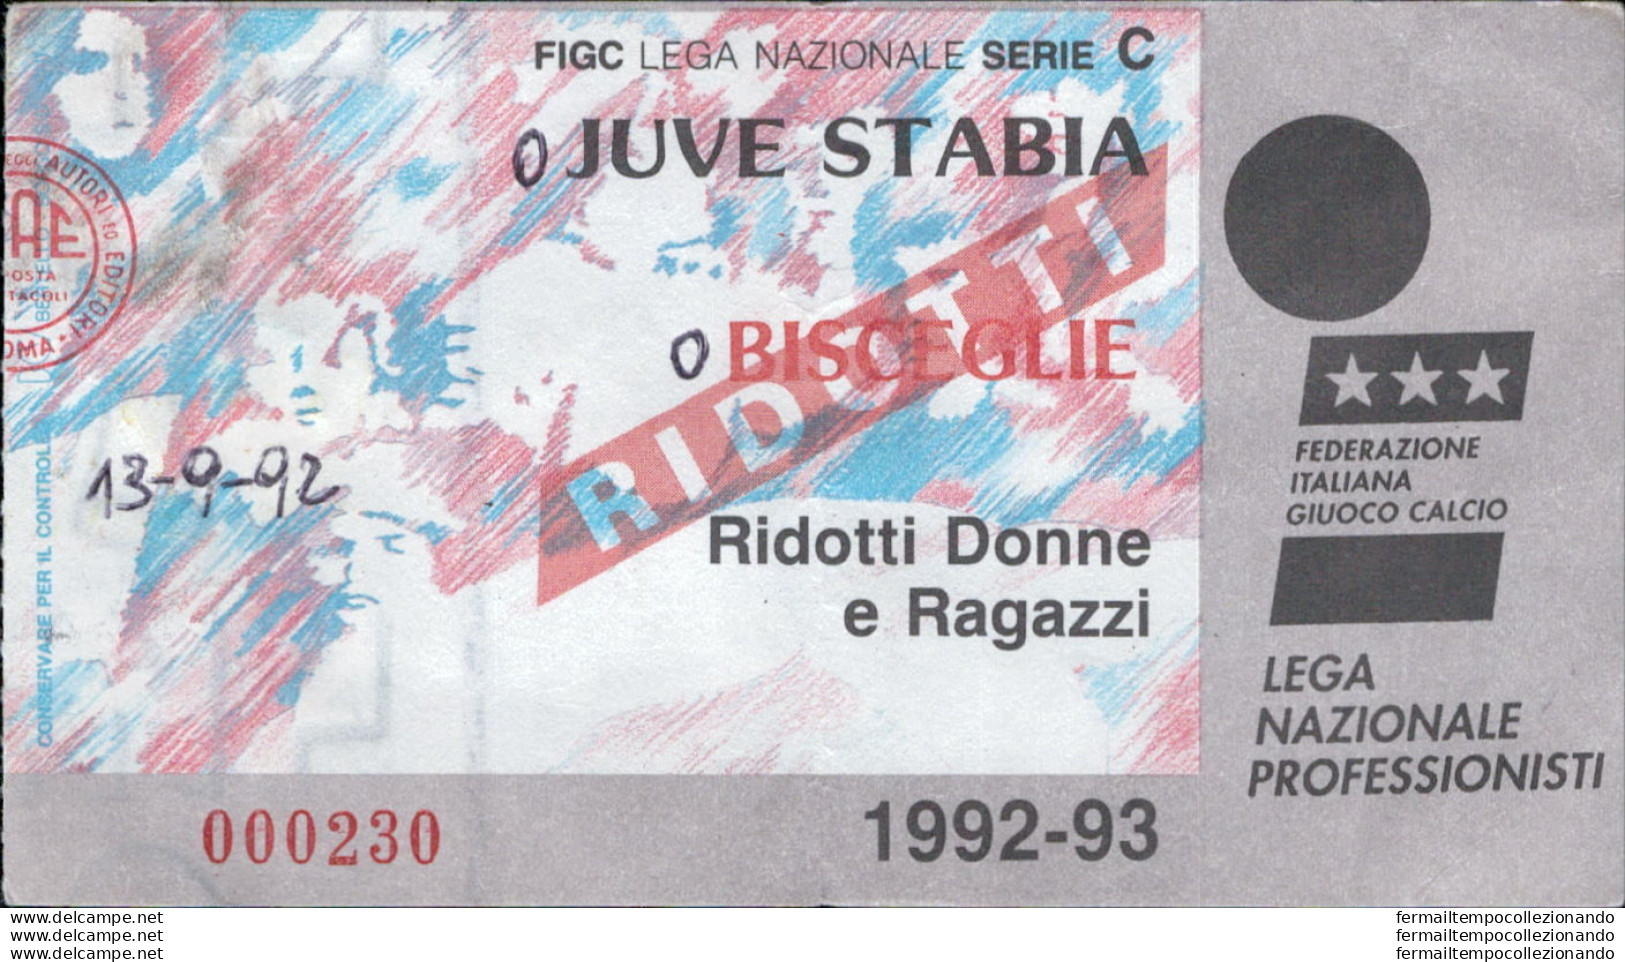 Bl63 Biglietto Calcio Ticket  Juve Stabia  - Bisceglie 1992-93 - Tickets - Vouchers